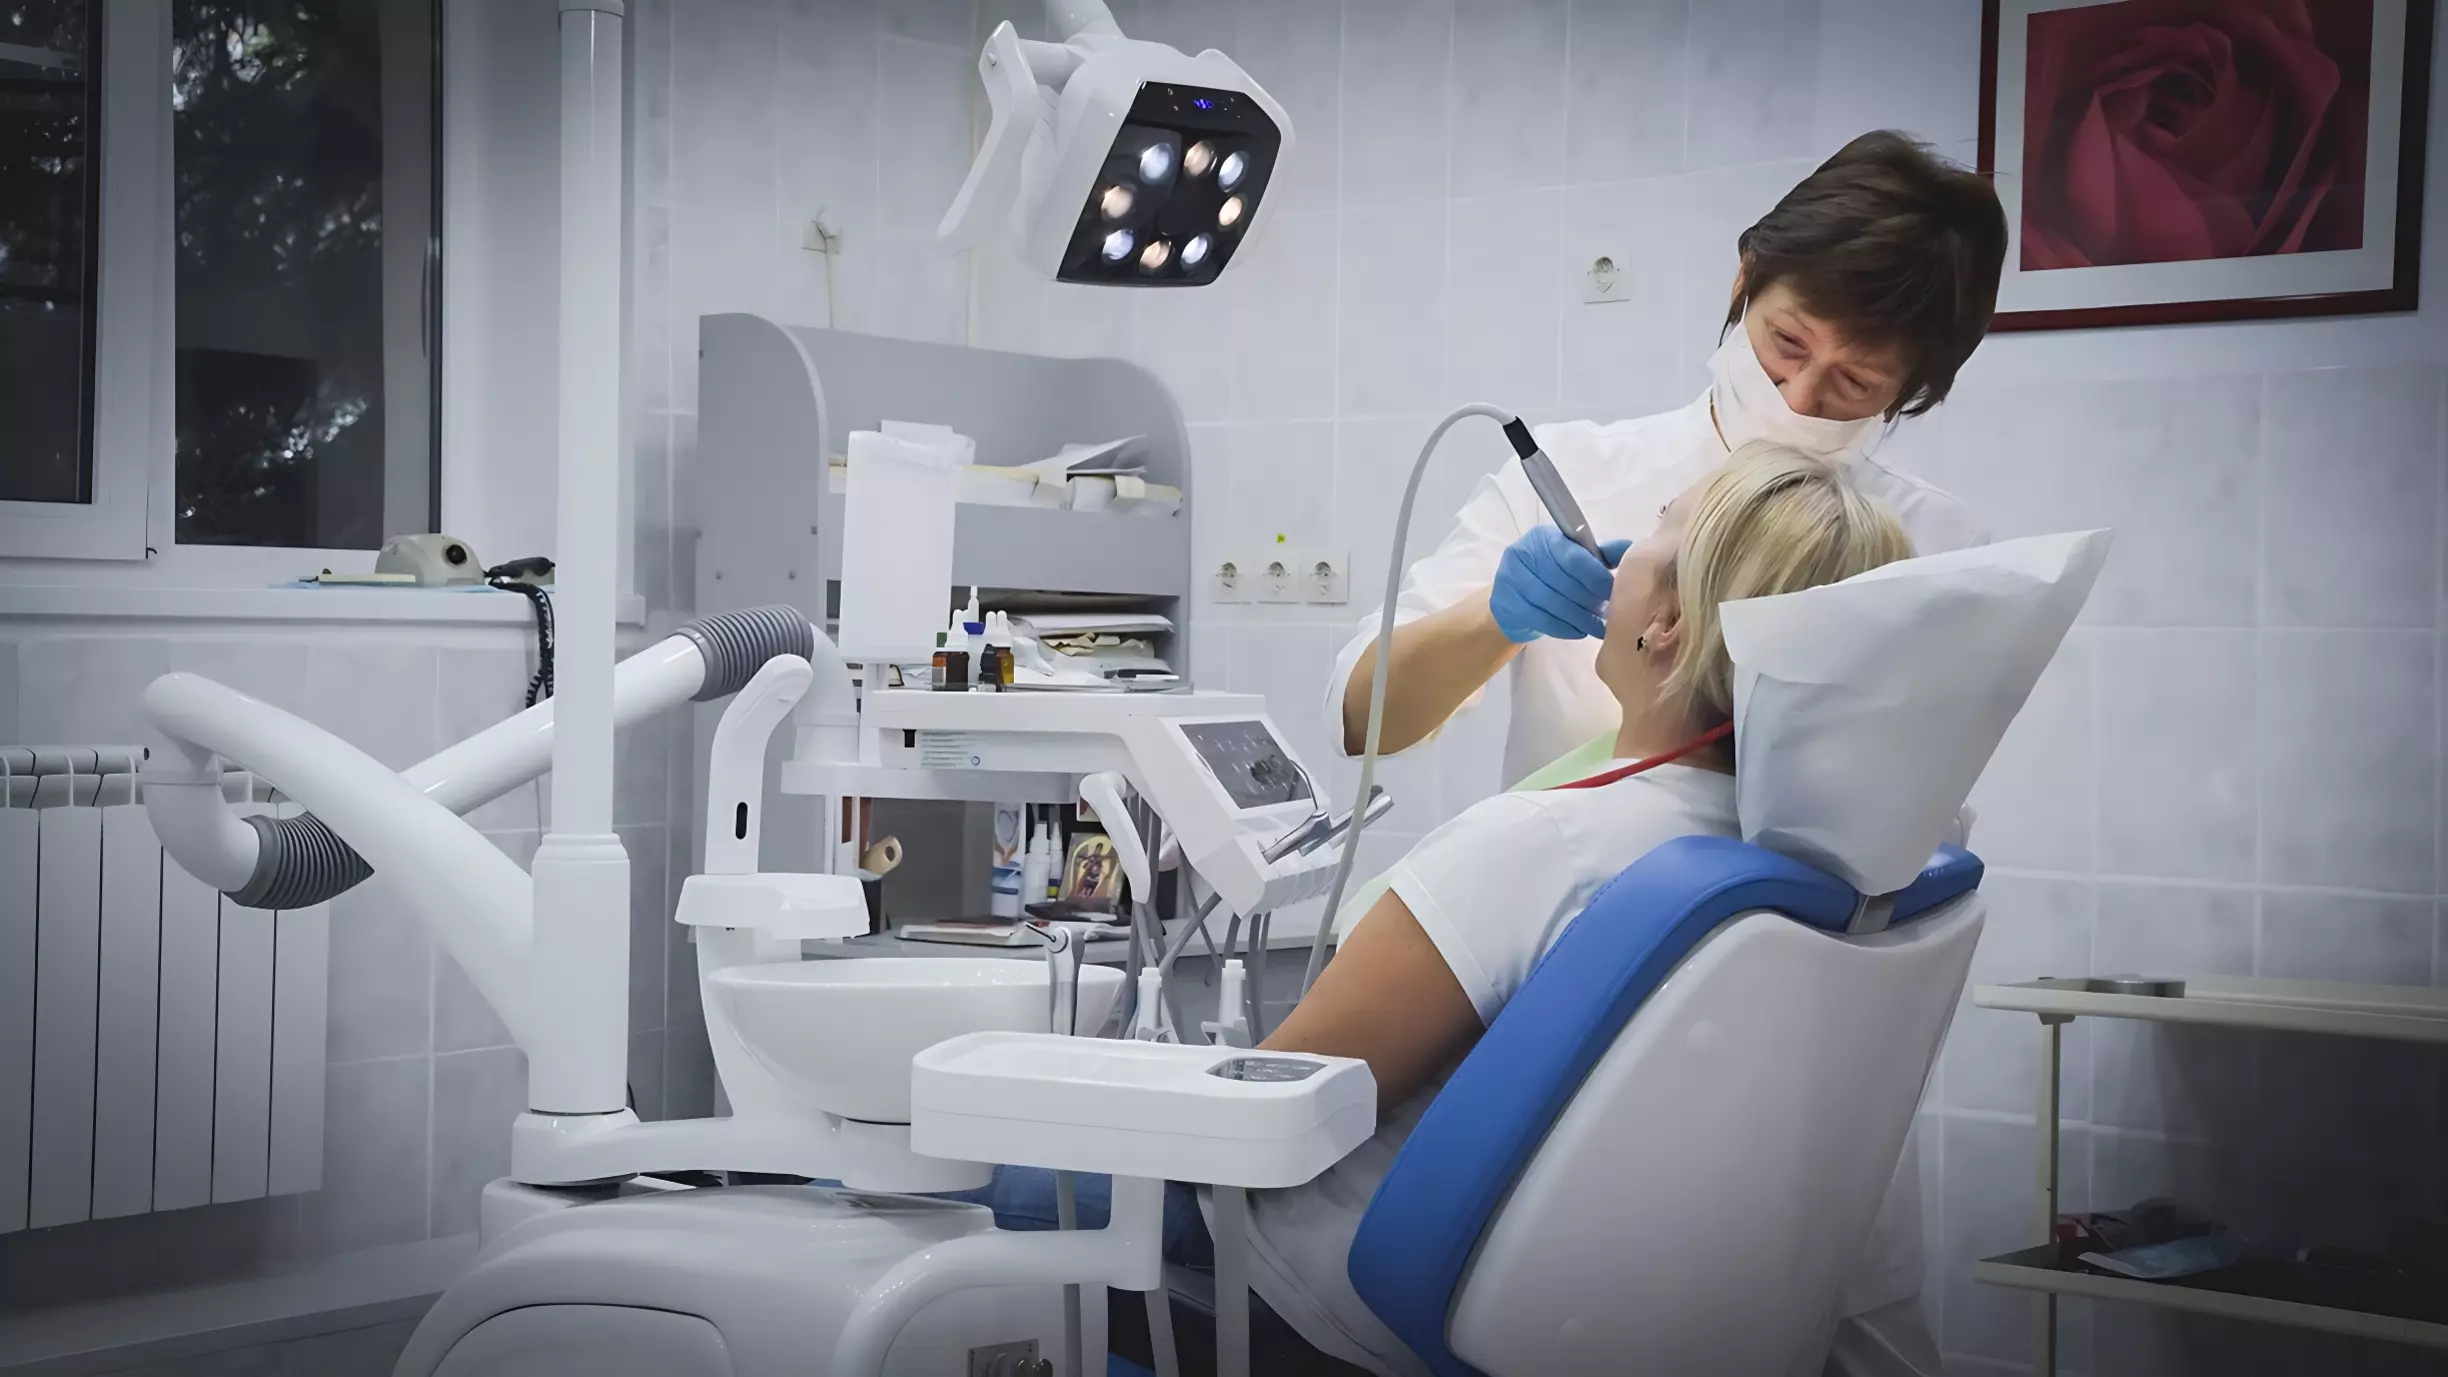 В ХМАО стоматолог на подработке получает больше заведующего целым отделением